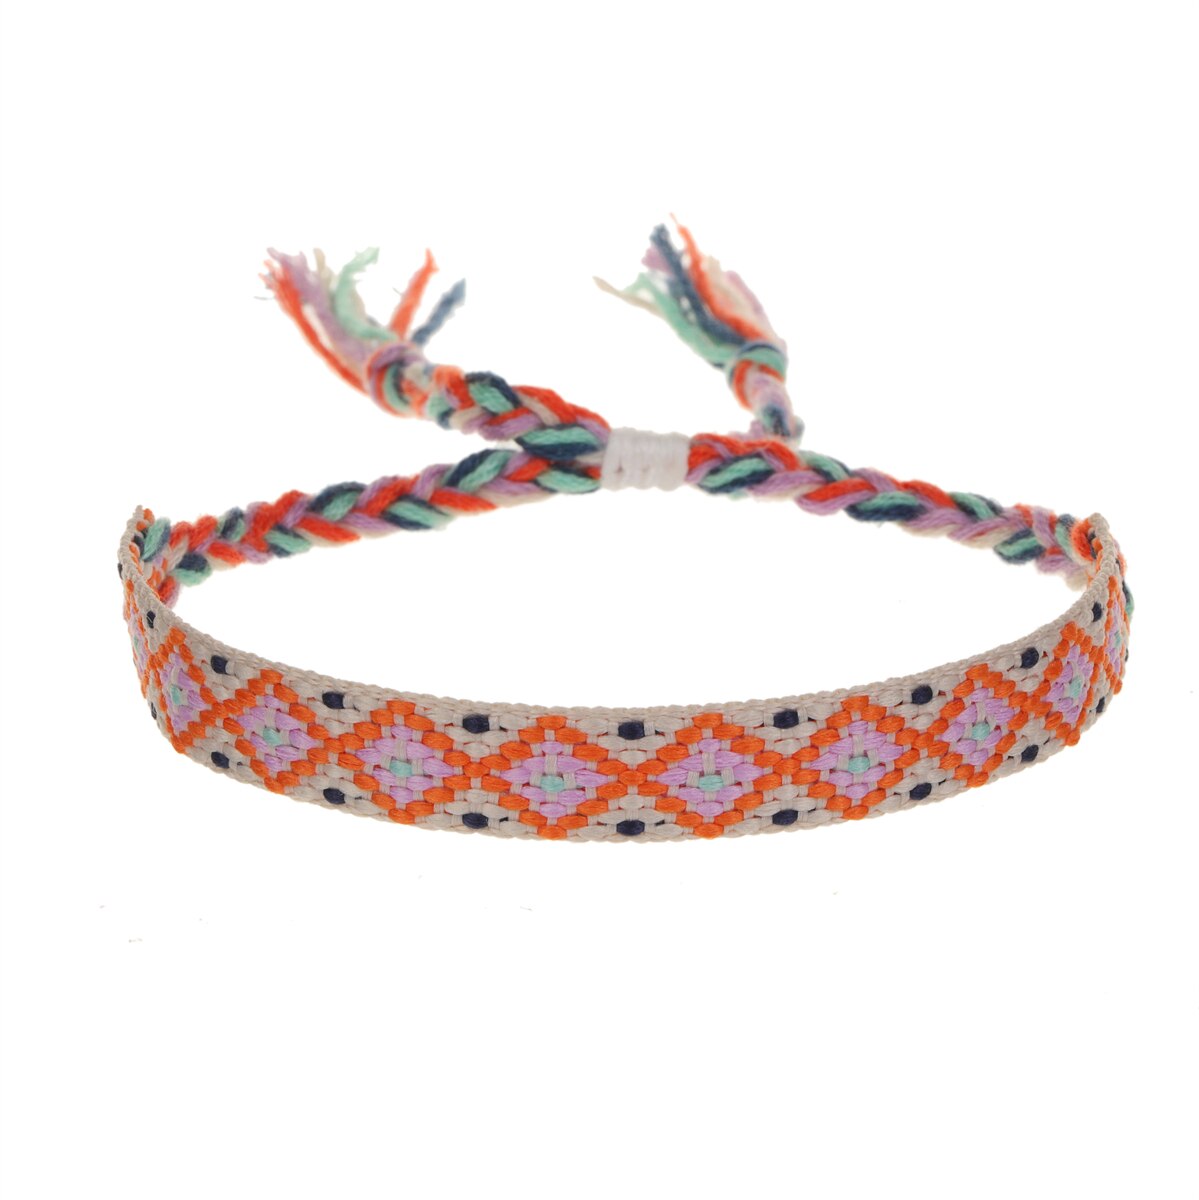 Handmade Woven Friendship Bracelets for Women Men Colorful Boho Surfer Bracelets Braided String Summer Beach Ankle Adjustable